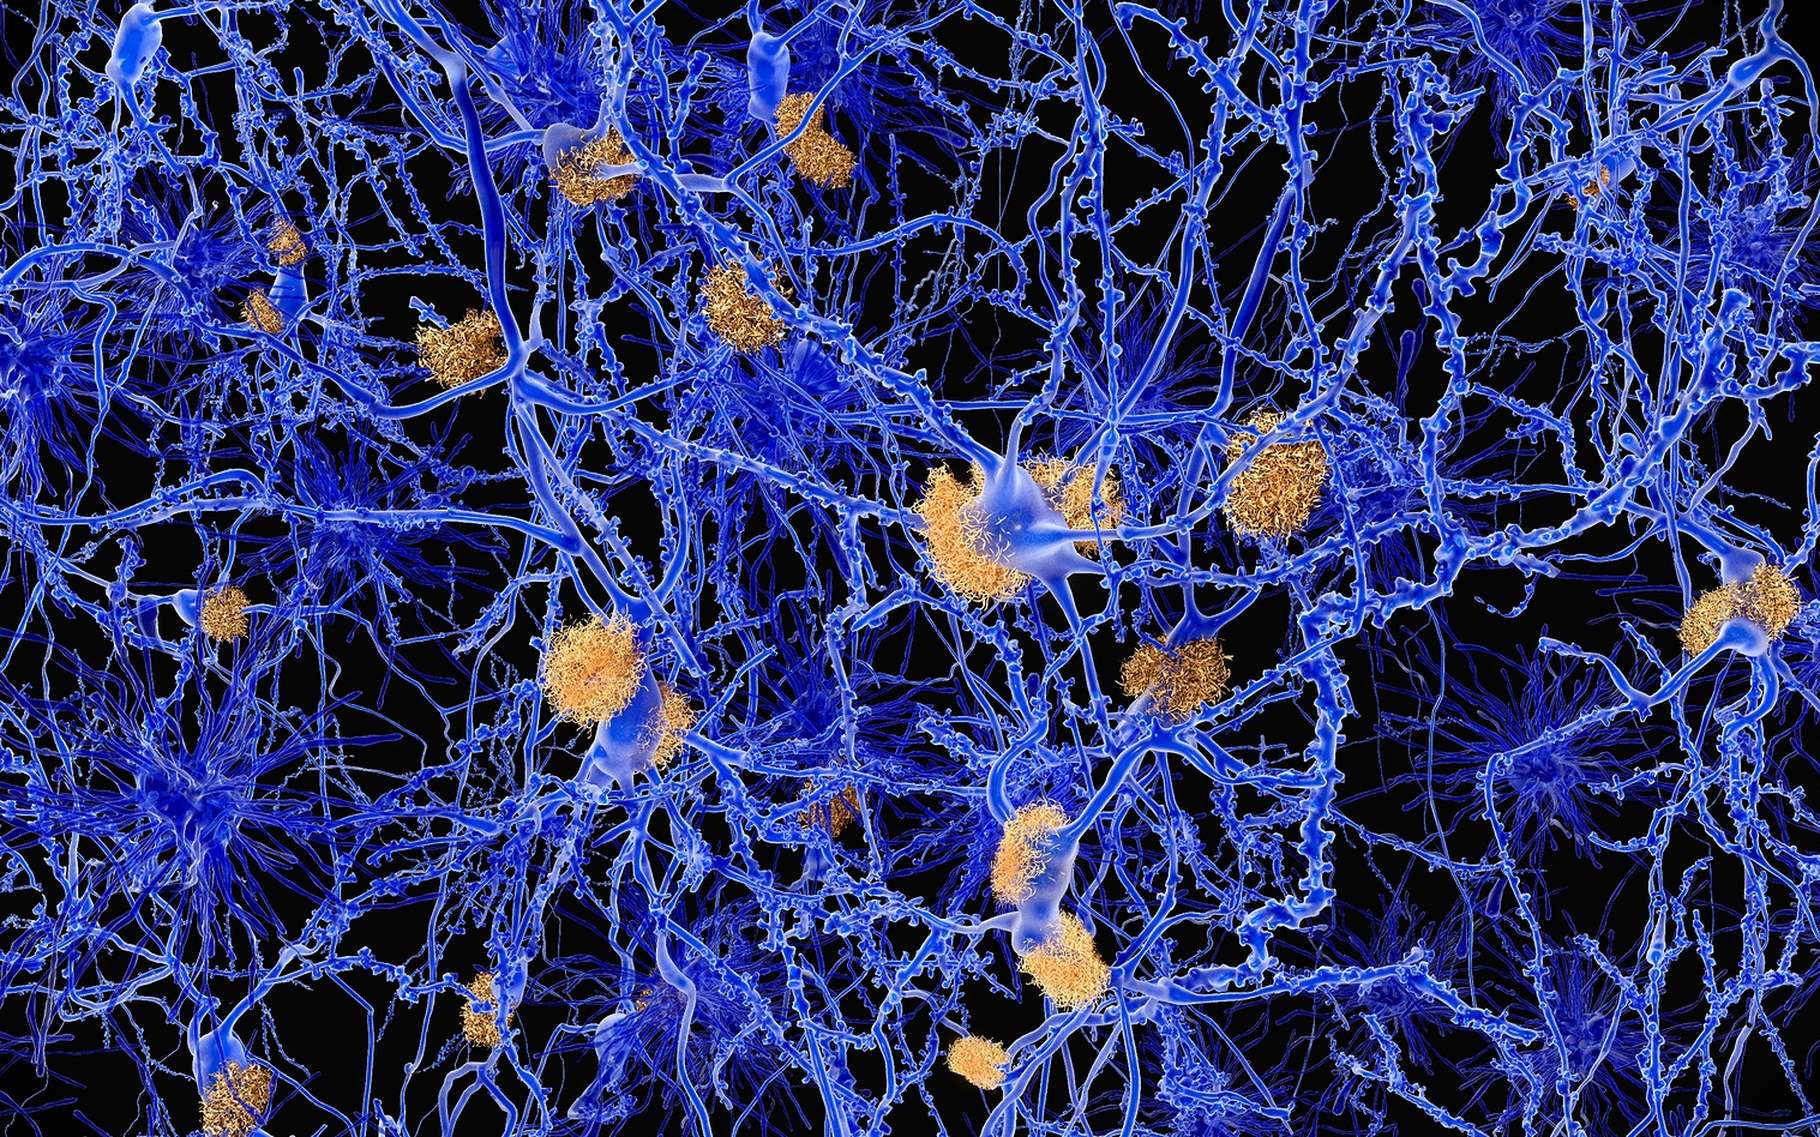 Dans la maladie d'Alzheimer, des plaques amyloïdes (ici en orange) s'accumulent entre les neurones (en bleu) et sont liées à l’agrégation de protéines mal repliées. Le phénomène est tout à fait similaire dans les maladies à prions. © Juan Gaertner, Shutterstock